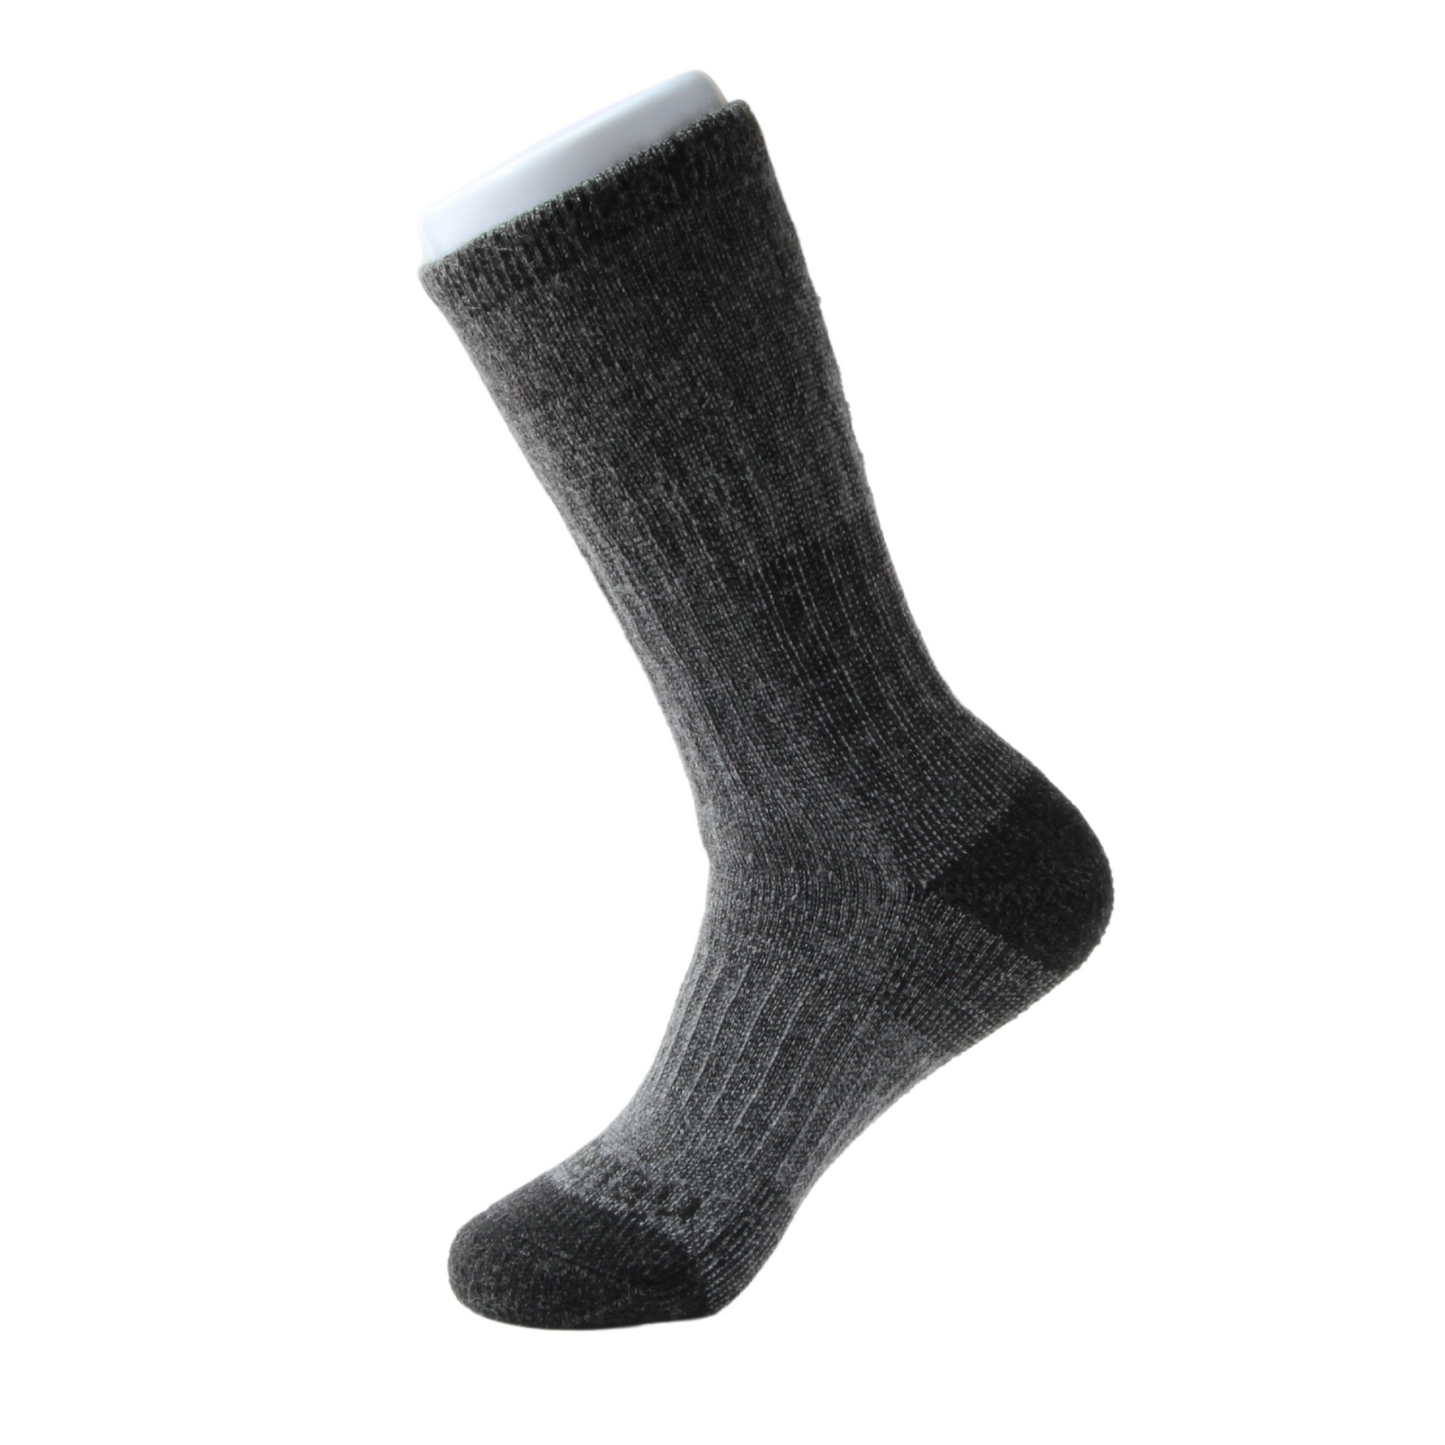 Grey & Charcoal Boot Heavyweight Merino Wool Kootenay Socks In The Wild